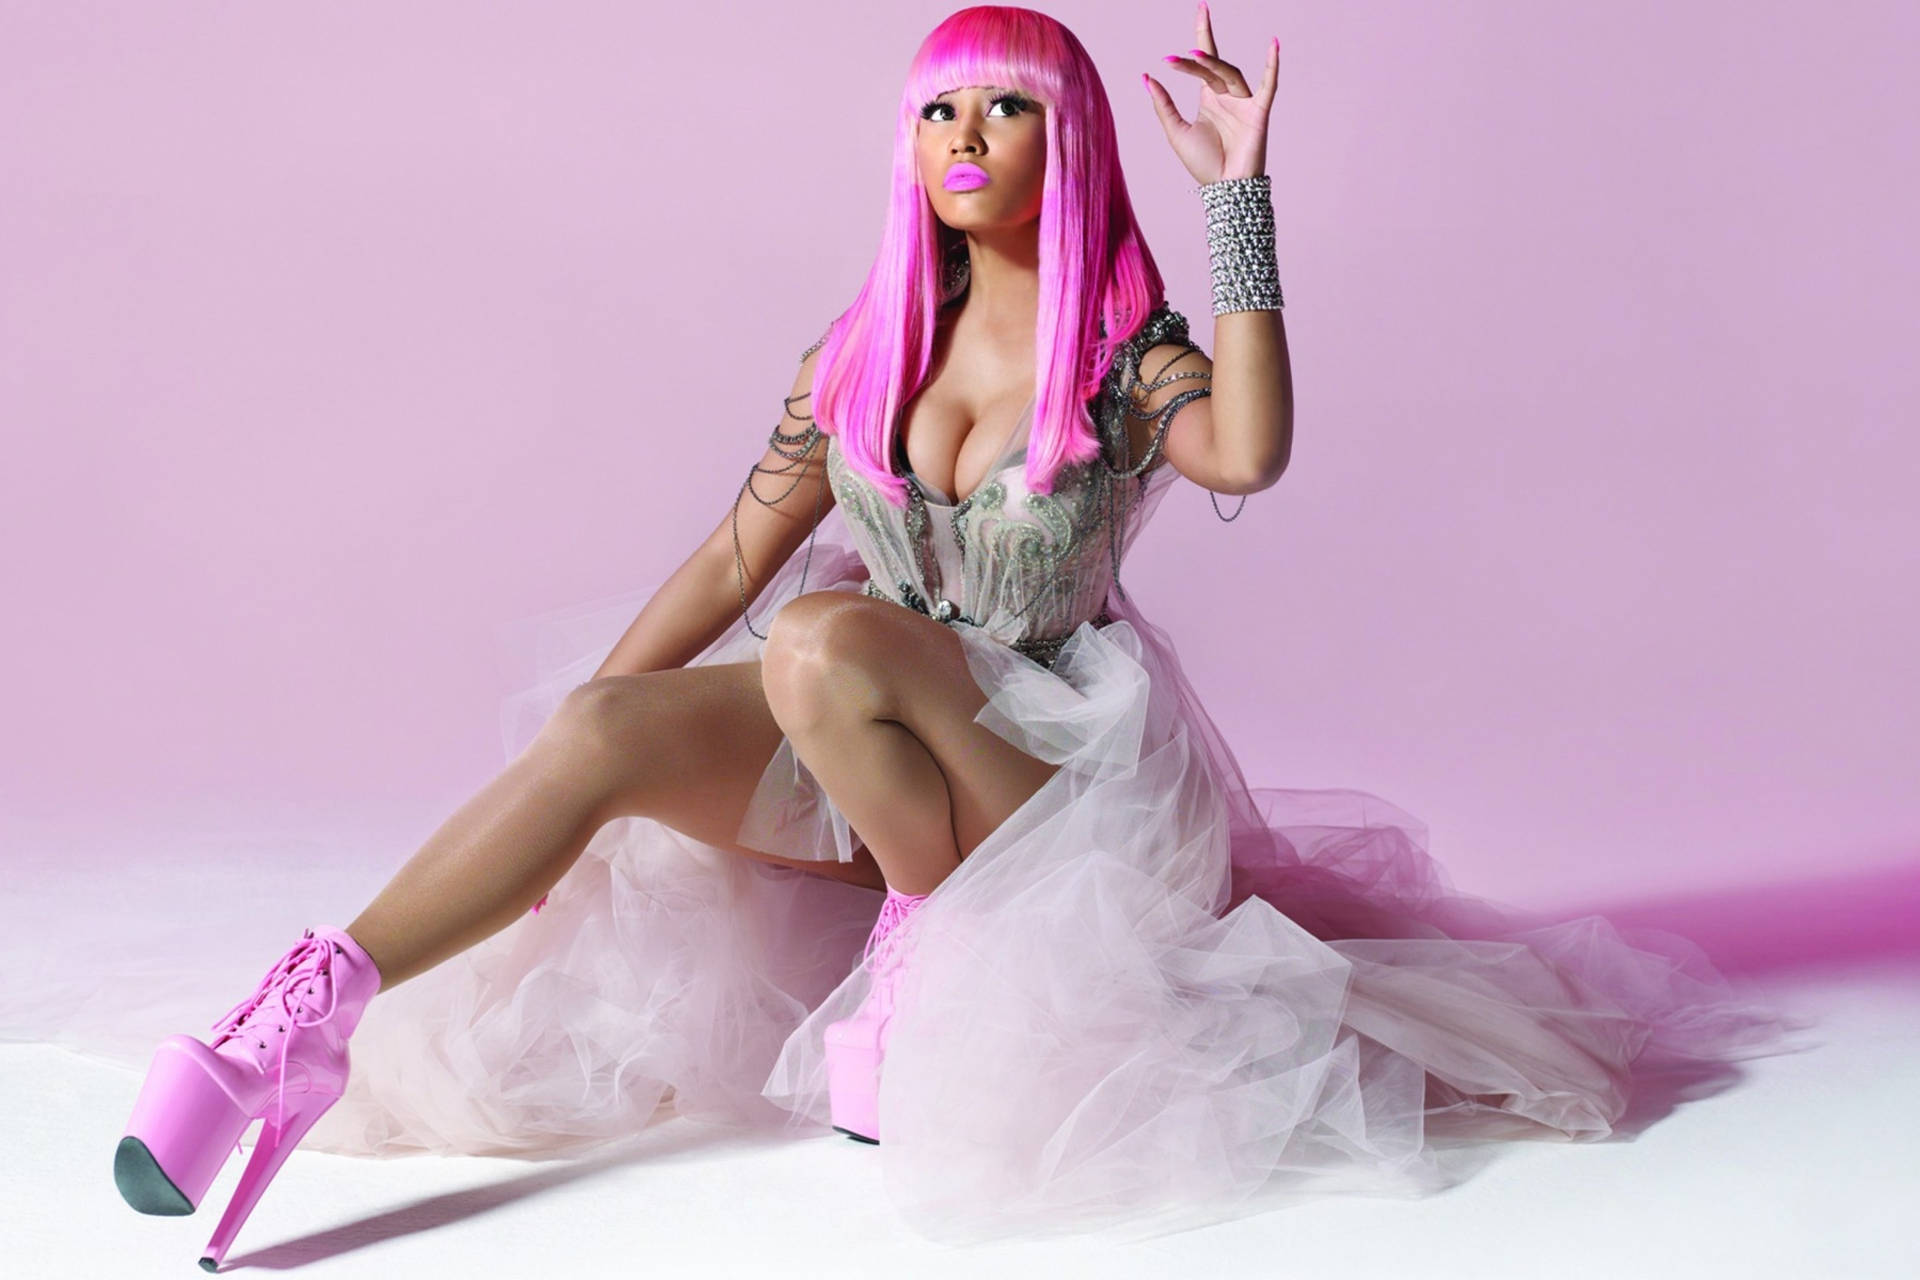 Nicki Minaj With Pink Hair